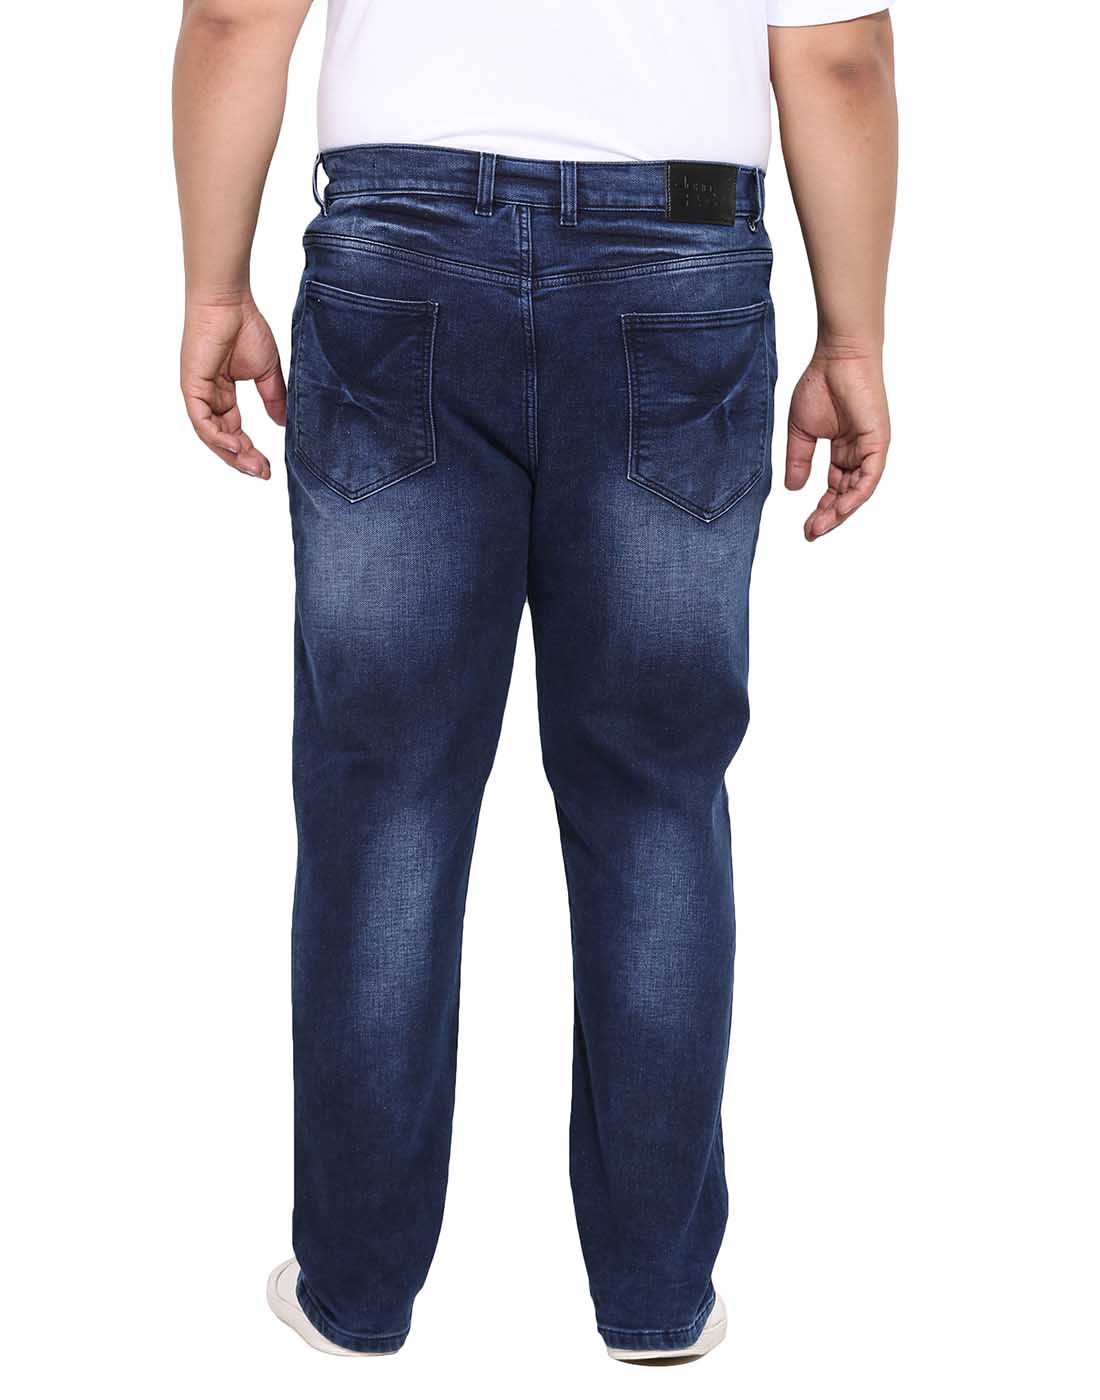 bottomwear/jeans/BEPLJPJ15151/bepljpj15151-6.jpg